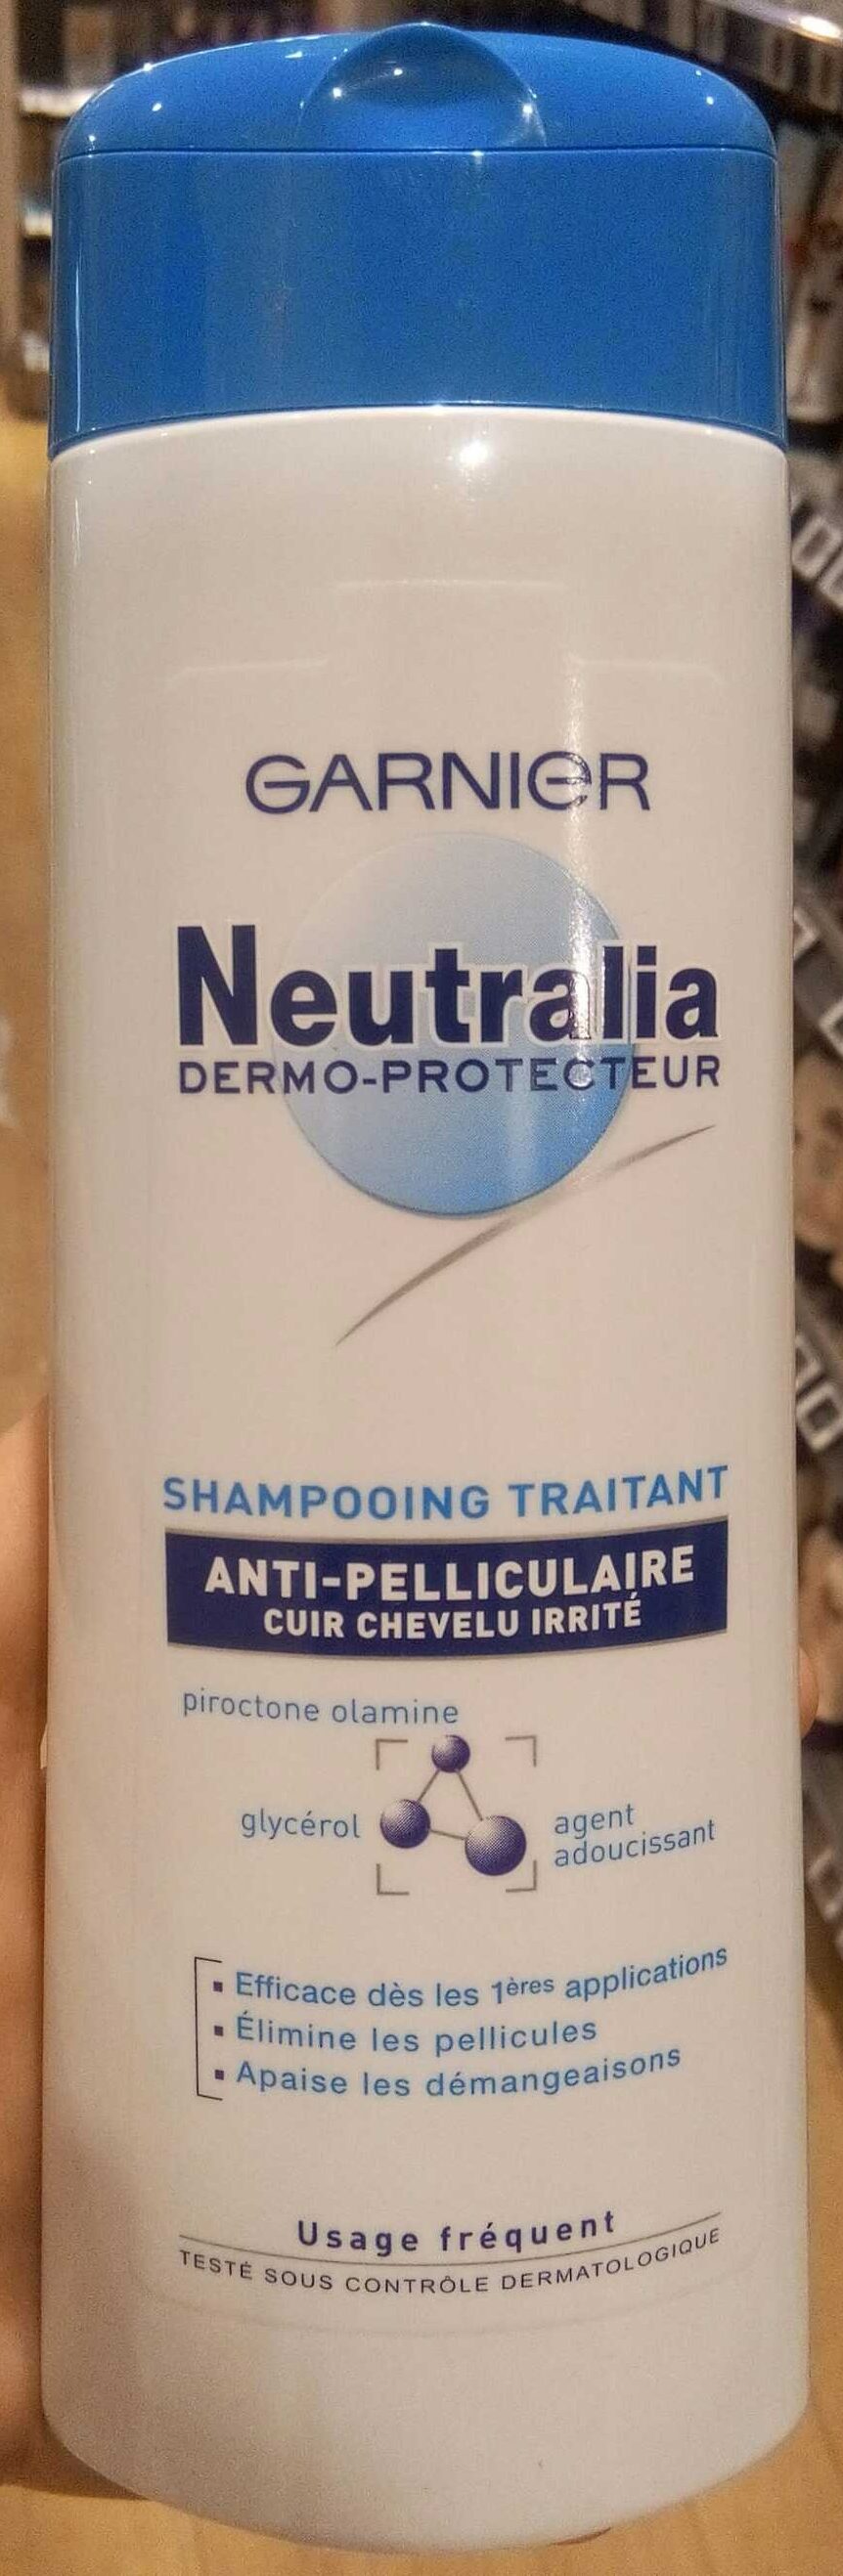 Neutralia Dermo-Protecteur Shampooing Traitant Anti-Pelliculaire - Produto - fr